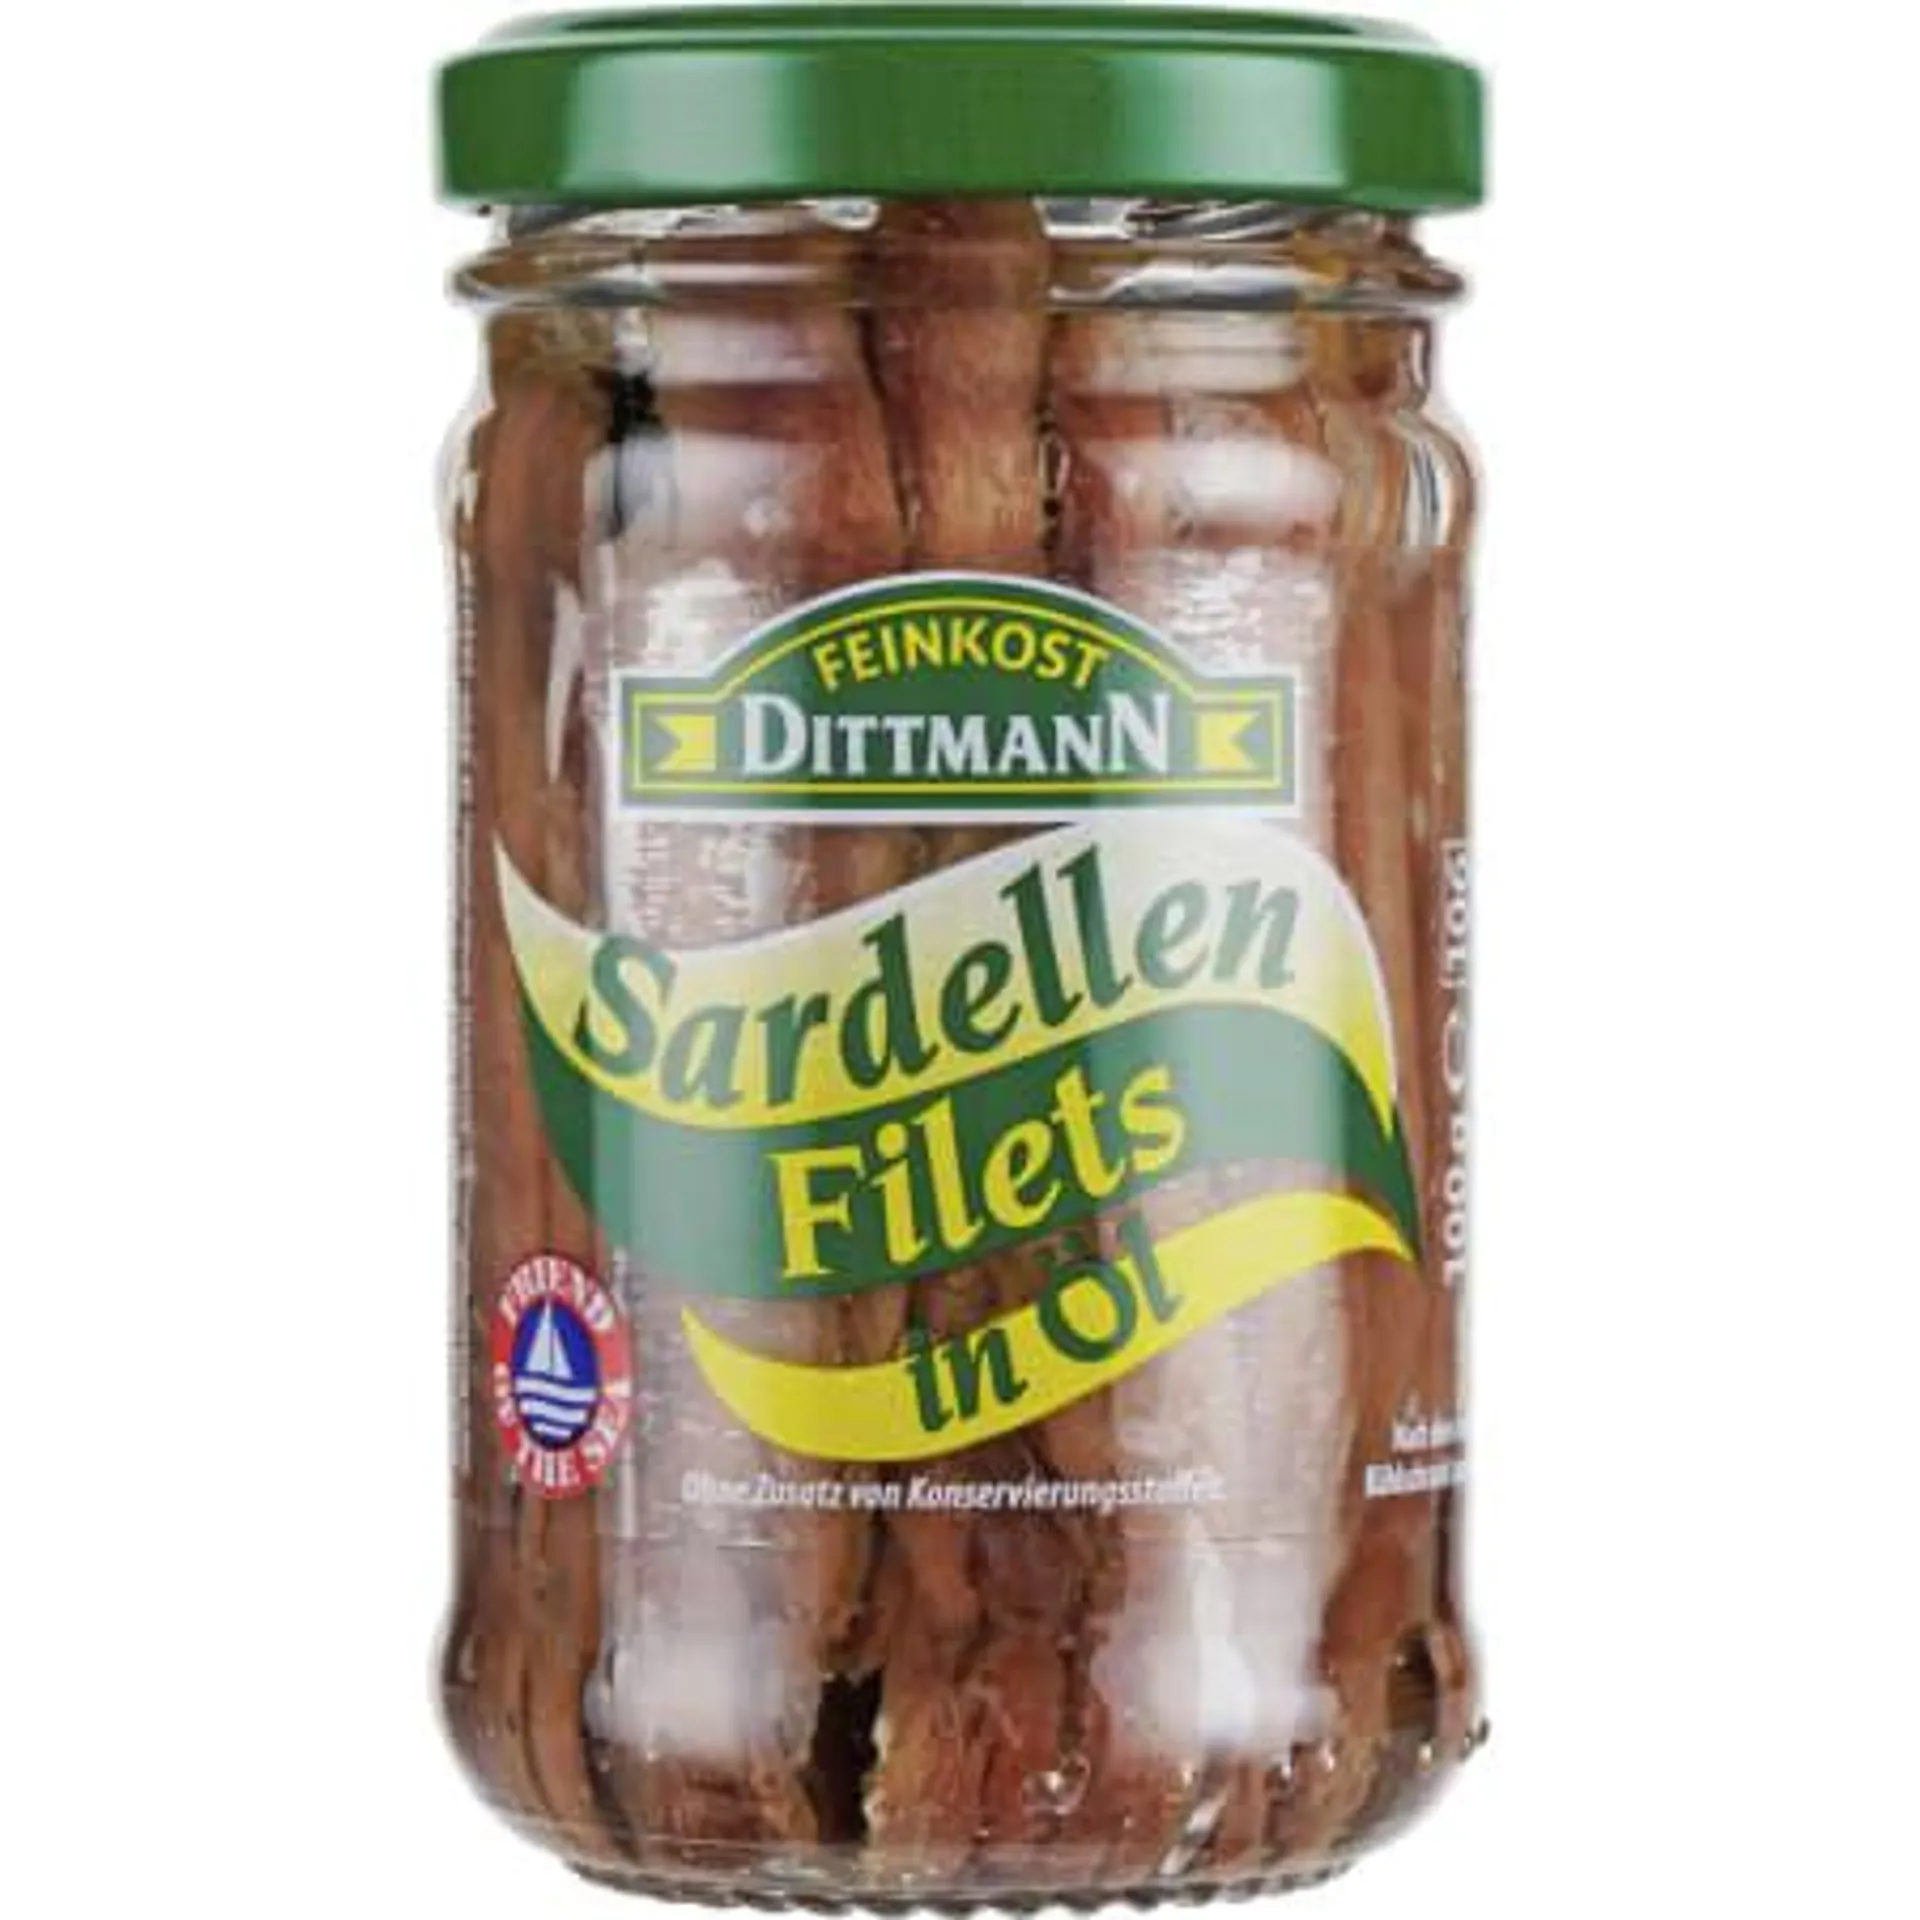 Sardellen-Filets in Öl